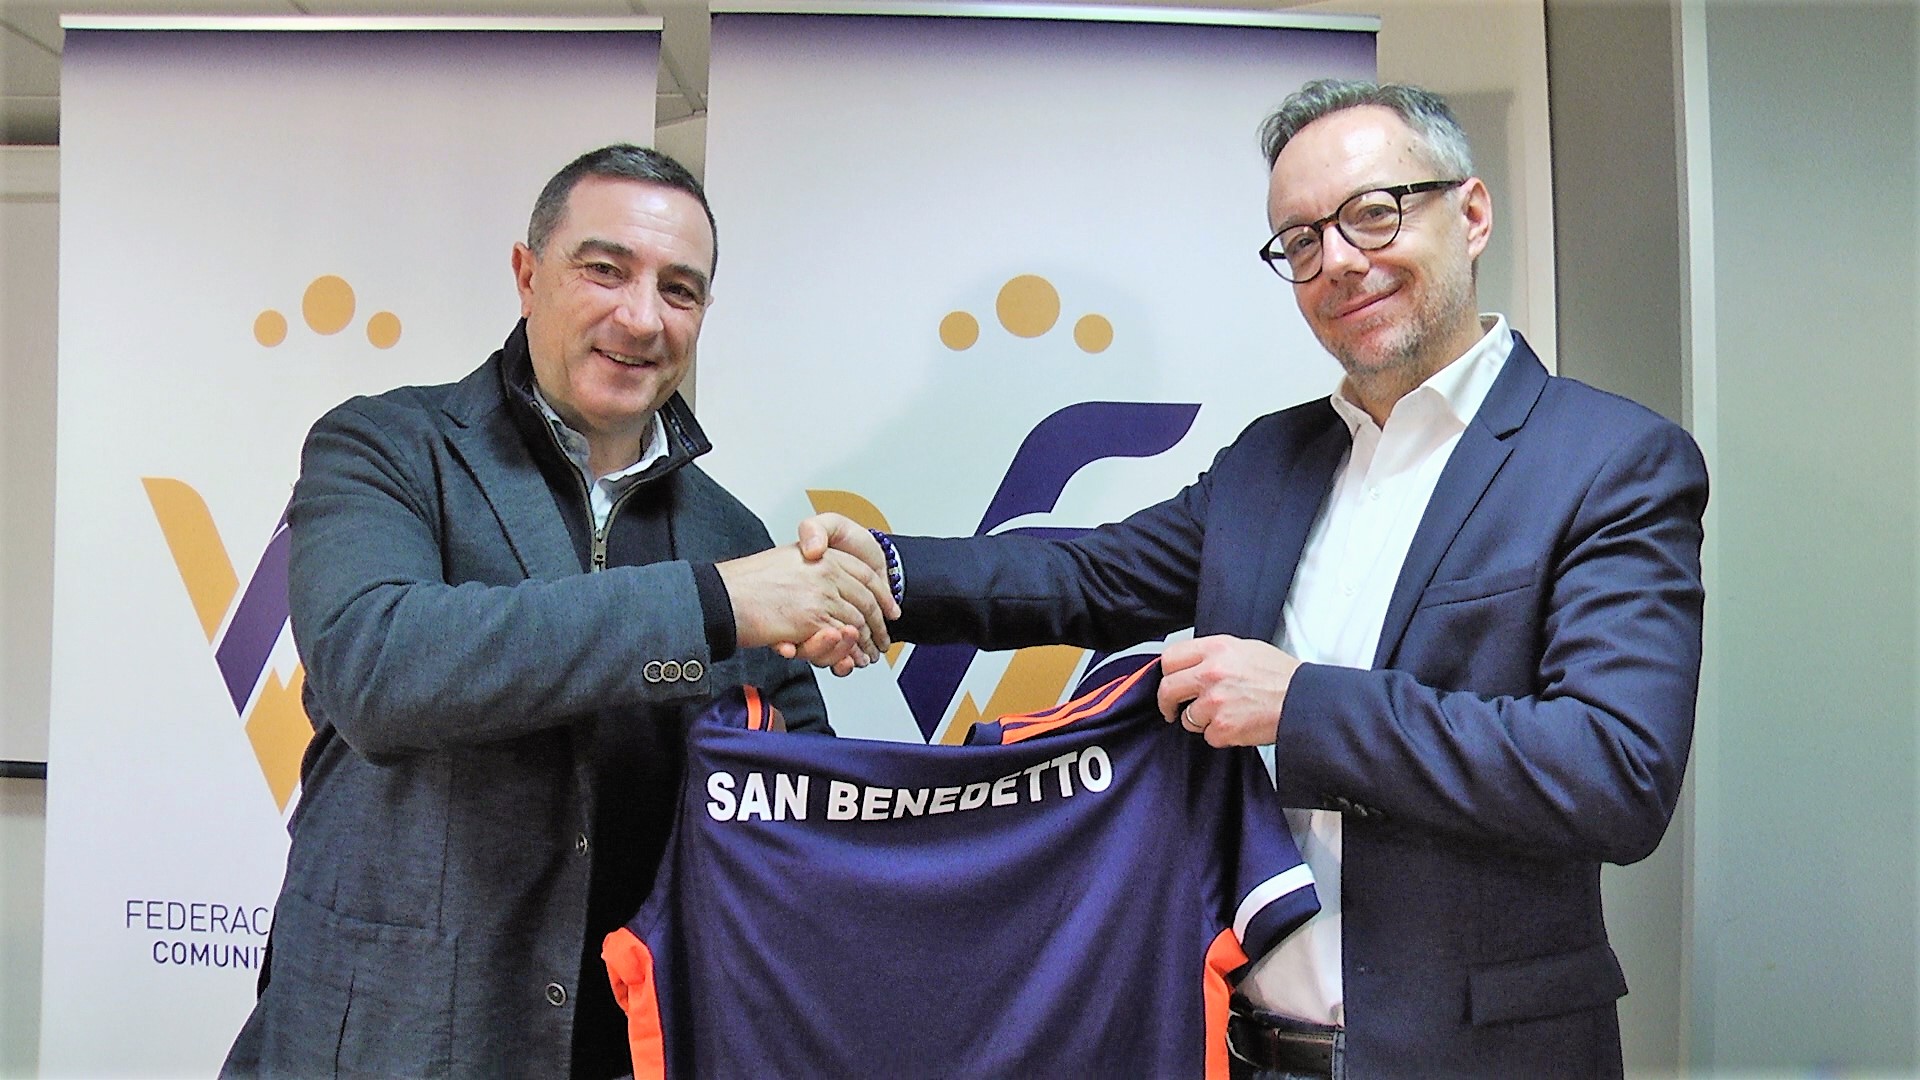 31 enero- Firma colaboración San Benedetto